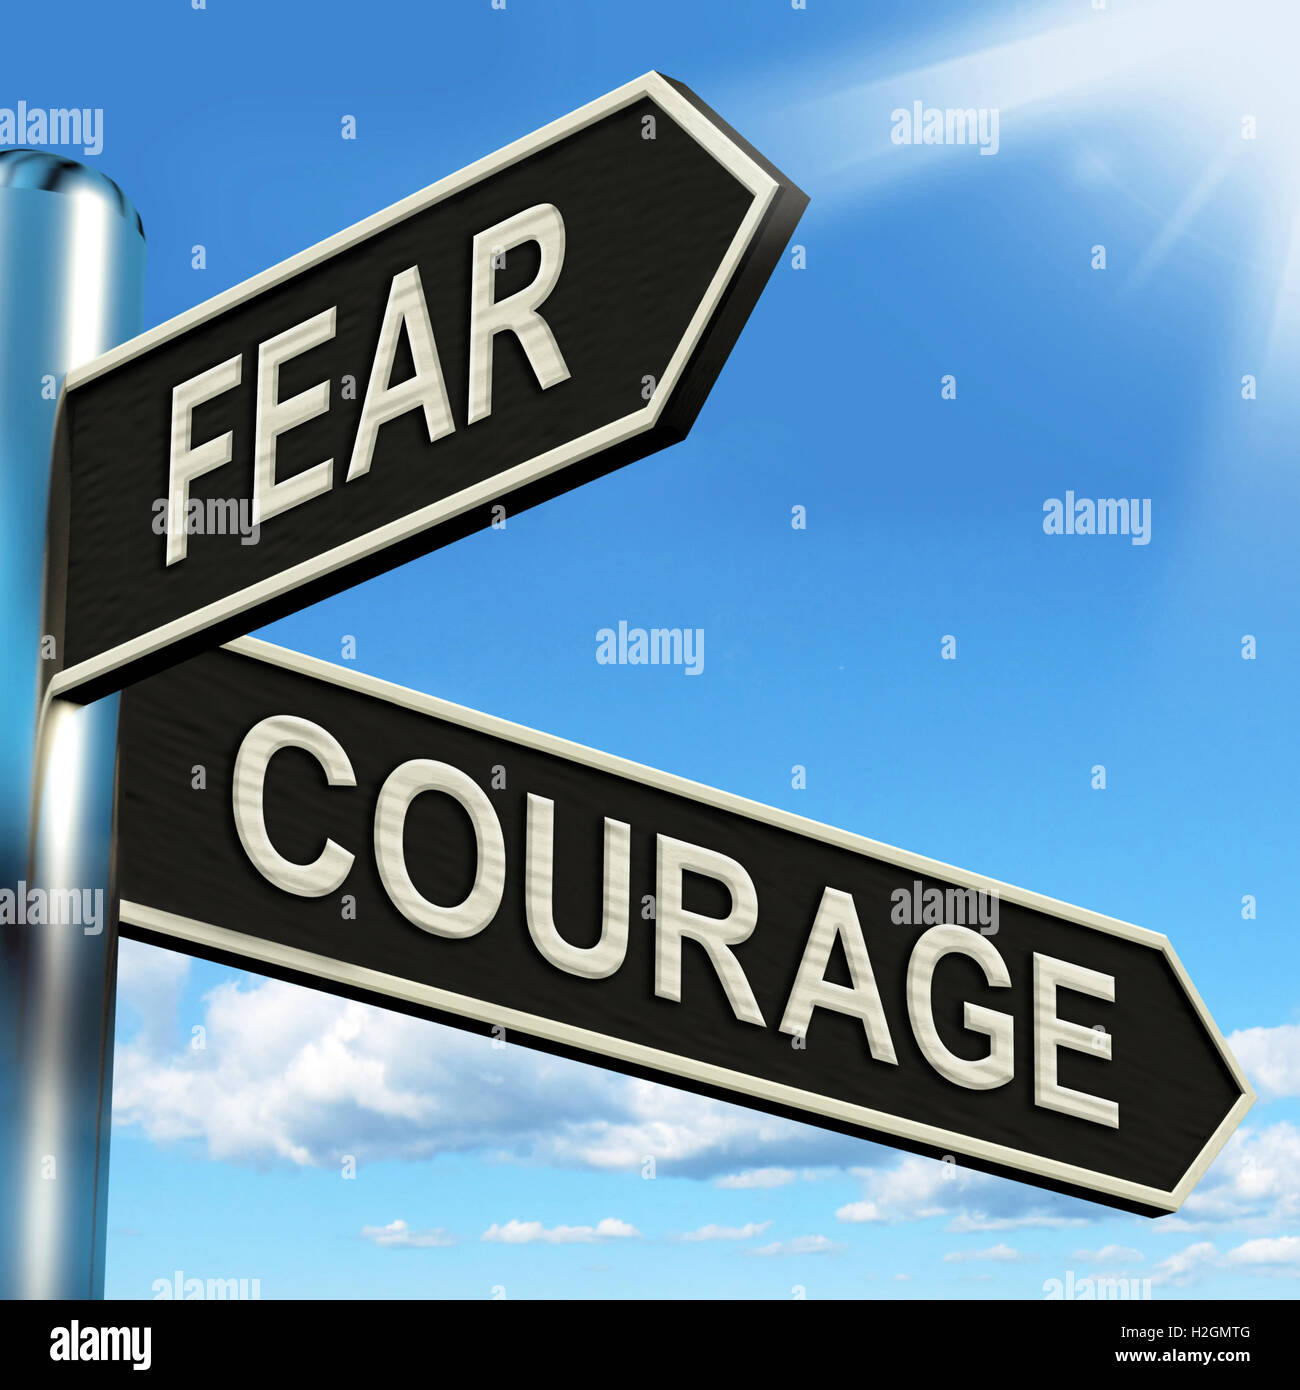 La peur Courage panneau montre de peur ou de courage Banque D'Images